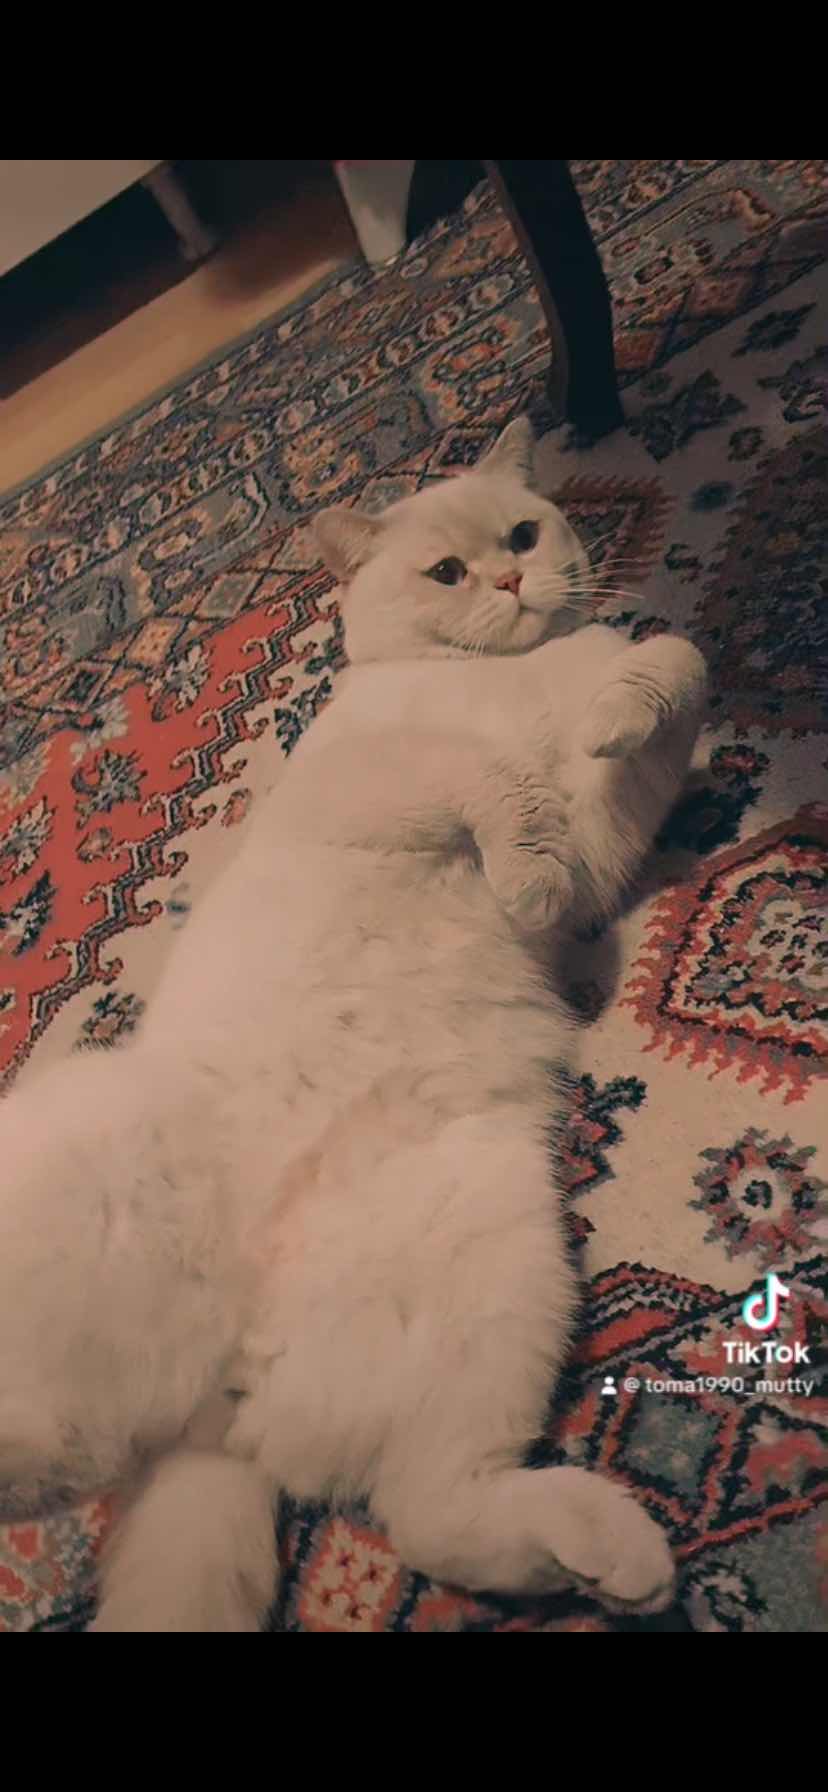  Ankara Çankaya cinsi British scottish kedim kaybolmuş